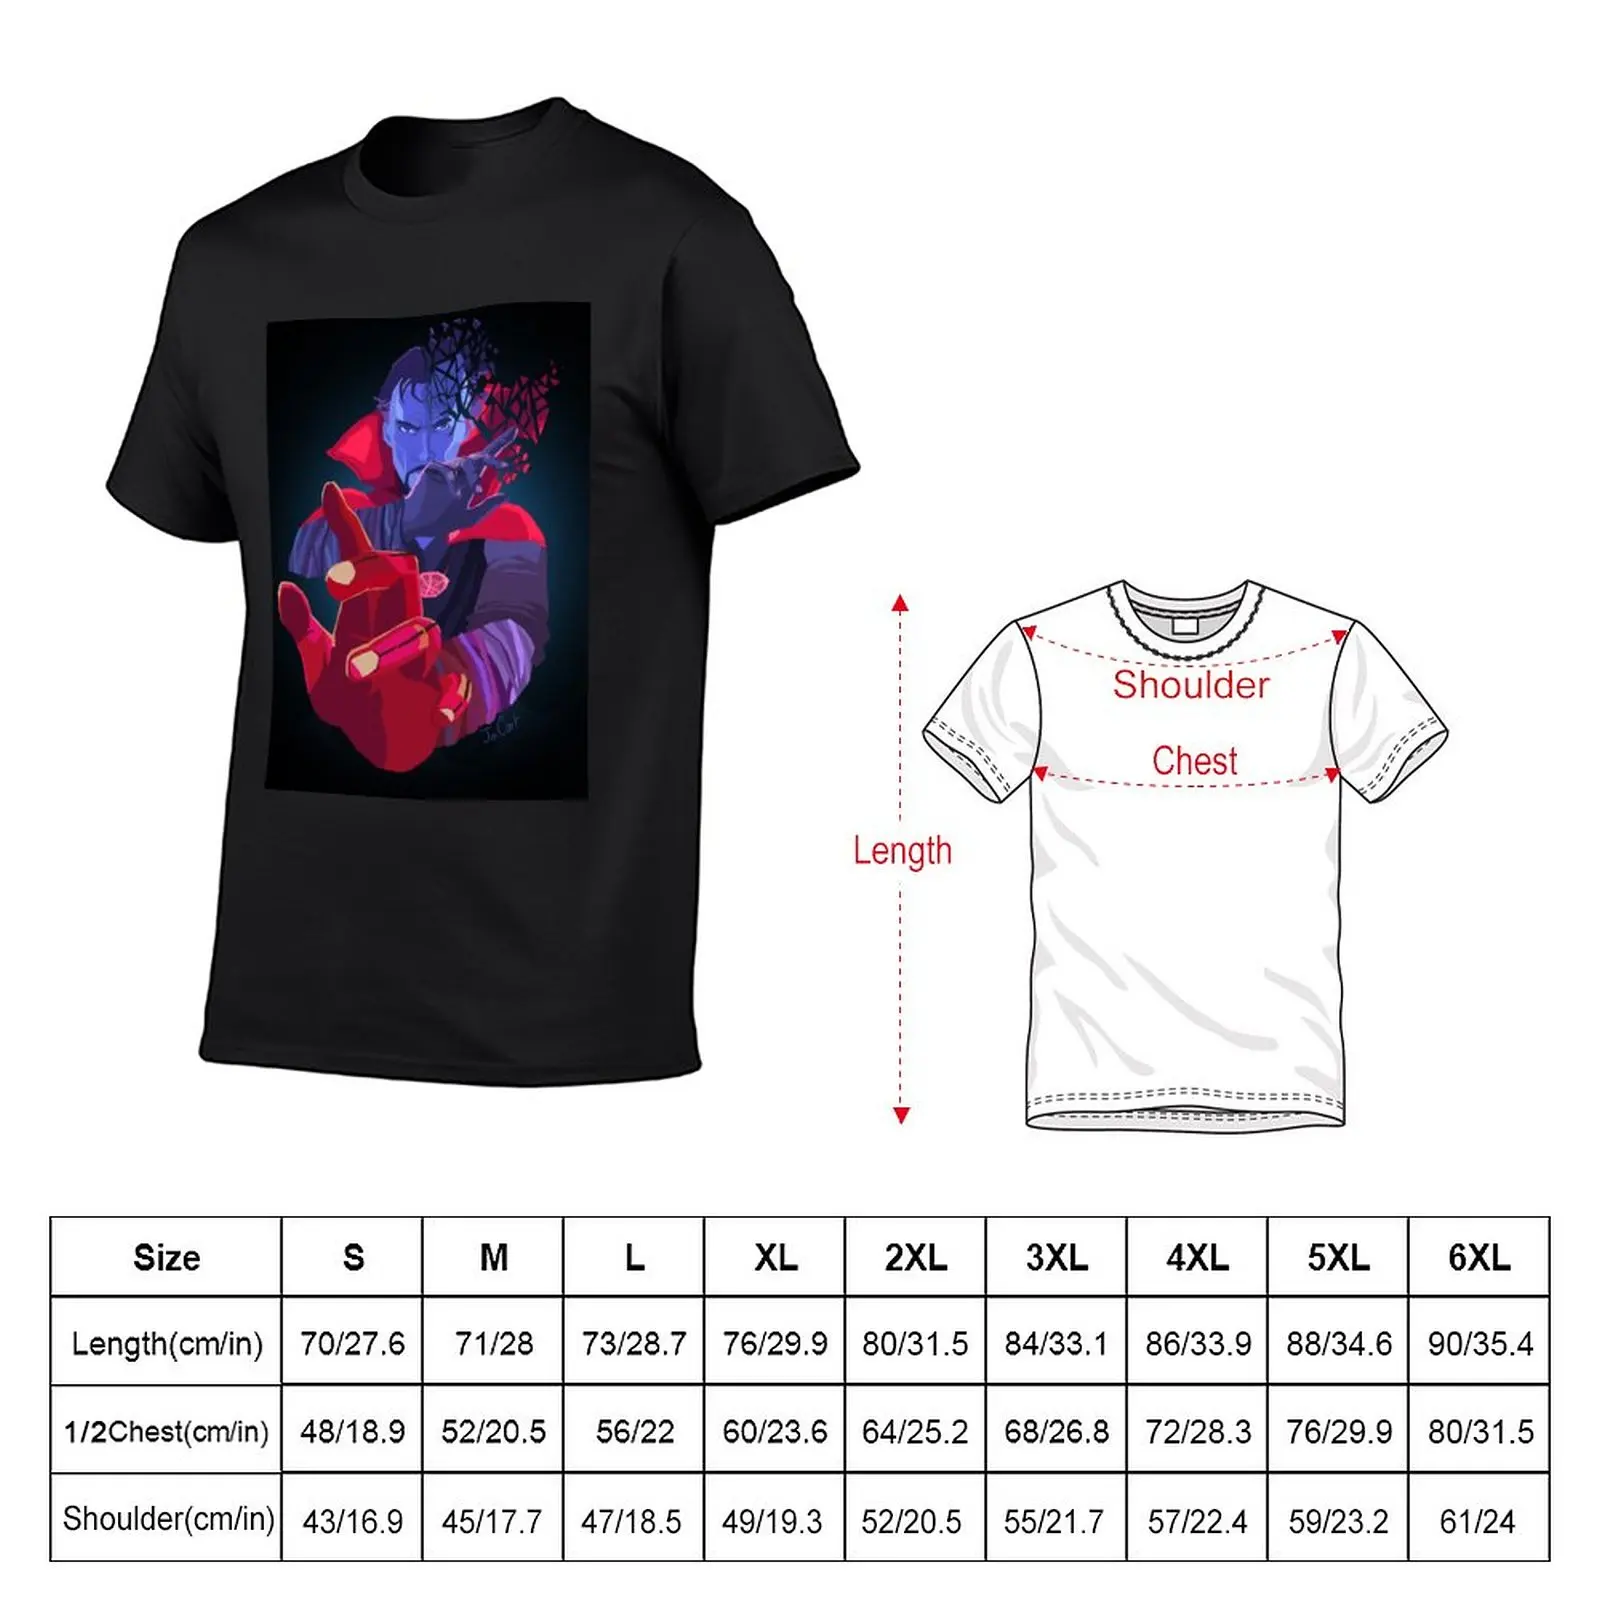 Dr. cizí tričko anime tričko nadrozměrné tričko grafické t kosile přizpůsobené t kosile těžký váha t kosile pro muži